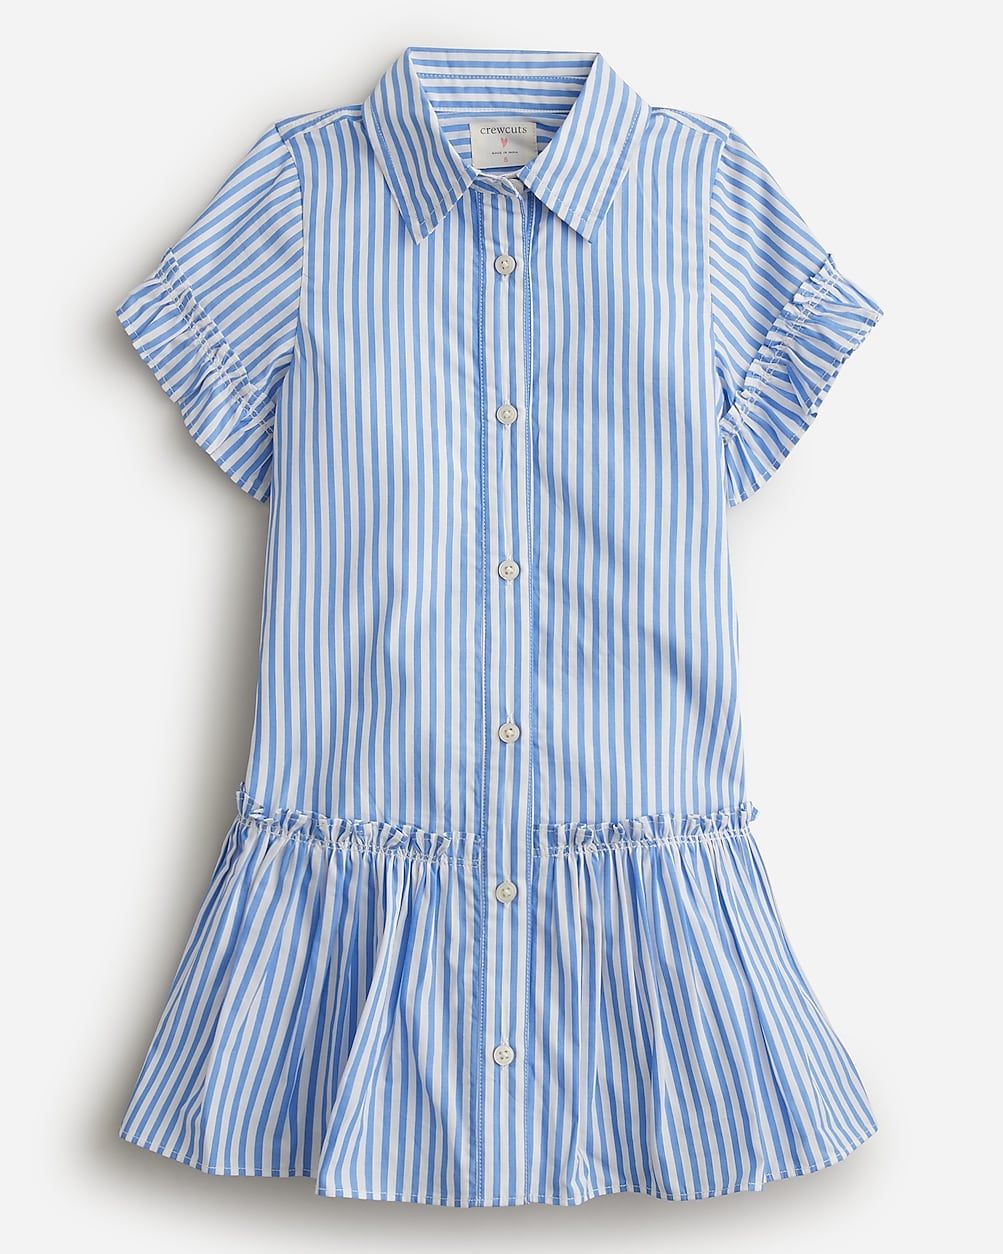 Girls' Amelia shirtdress in cotton poplin | J.Crew US